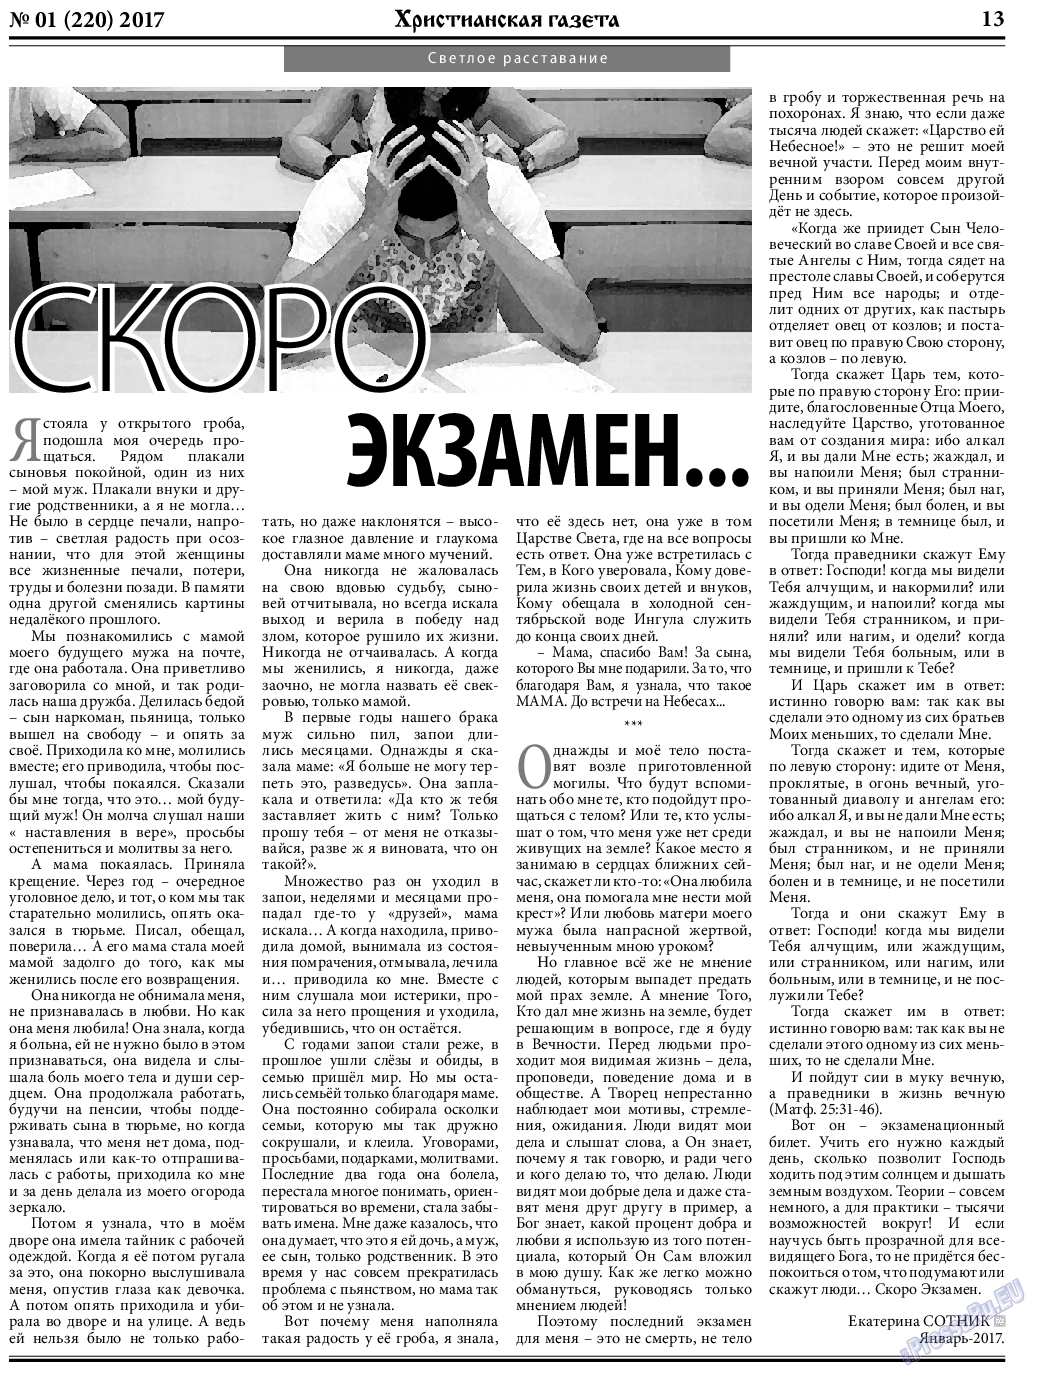 Христианская газета, газета. 2017 №1 стр.13